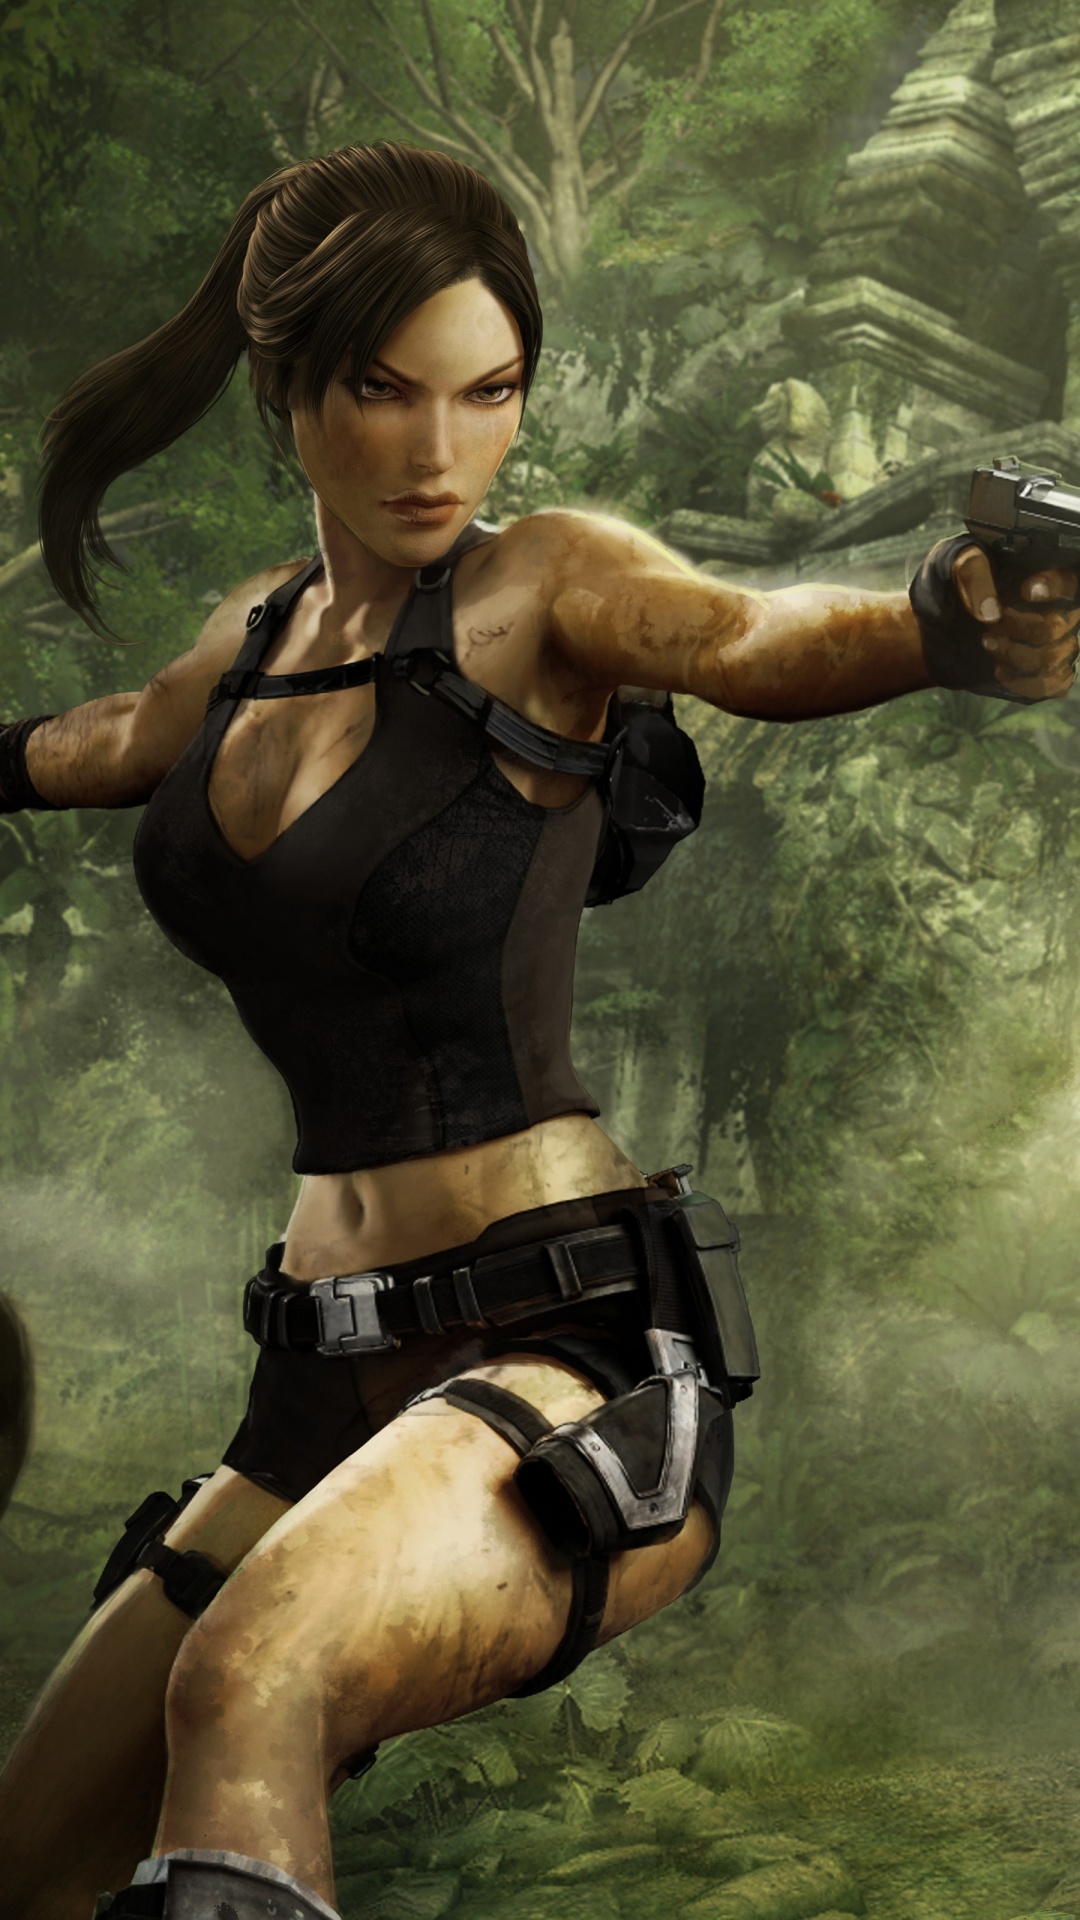 Tomb Raider Underworld Game